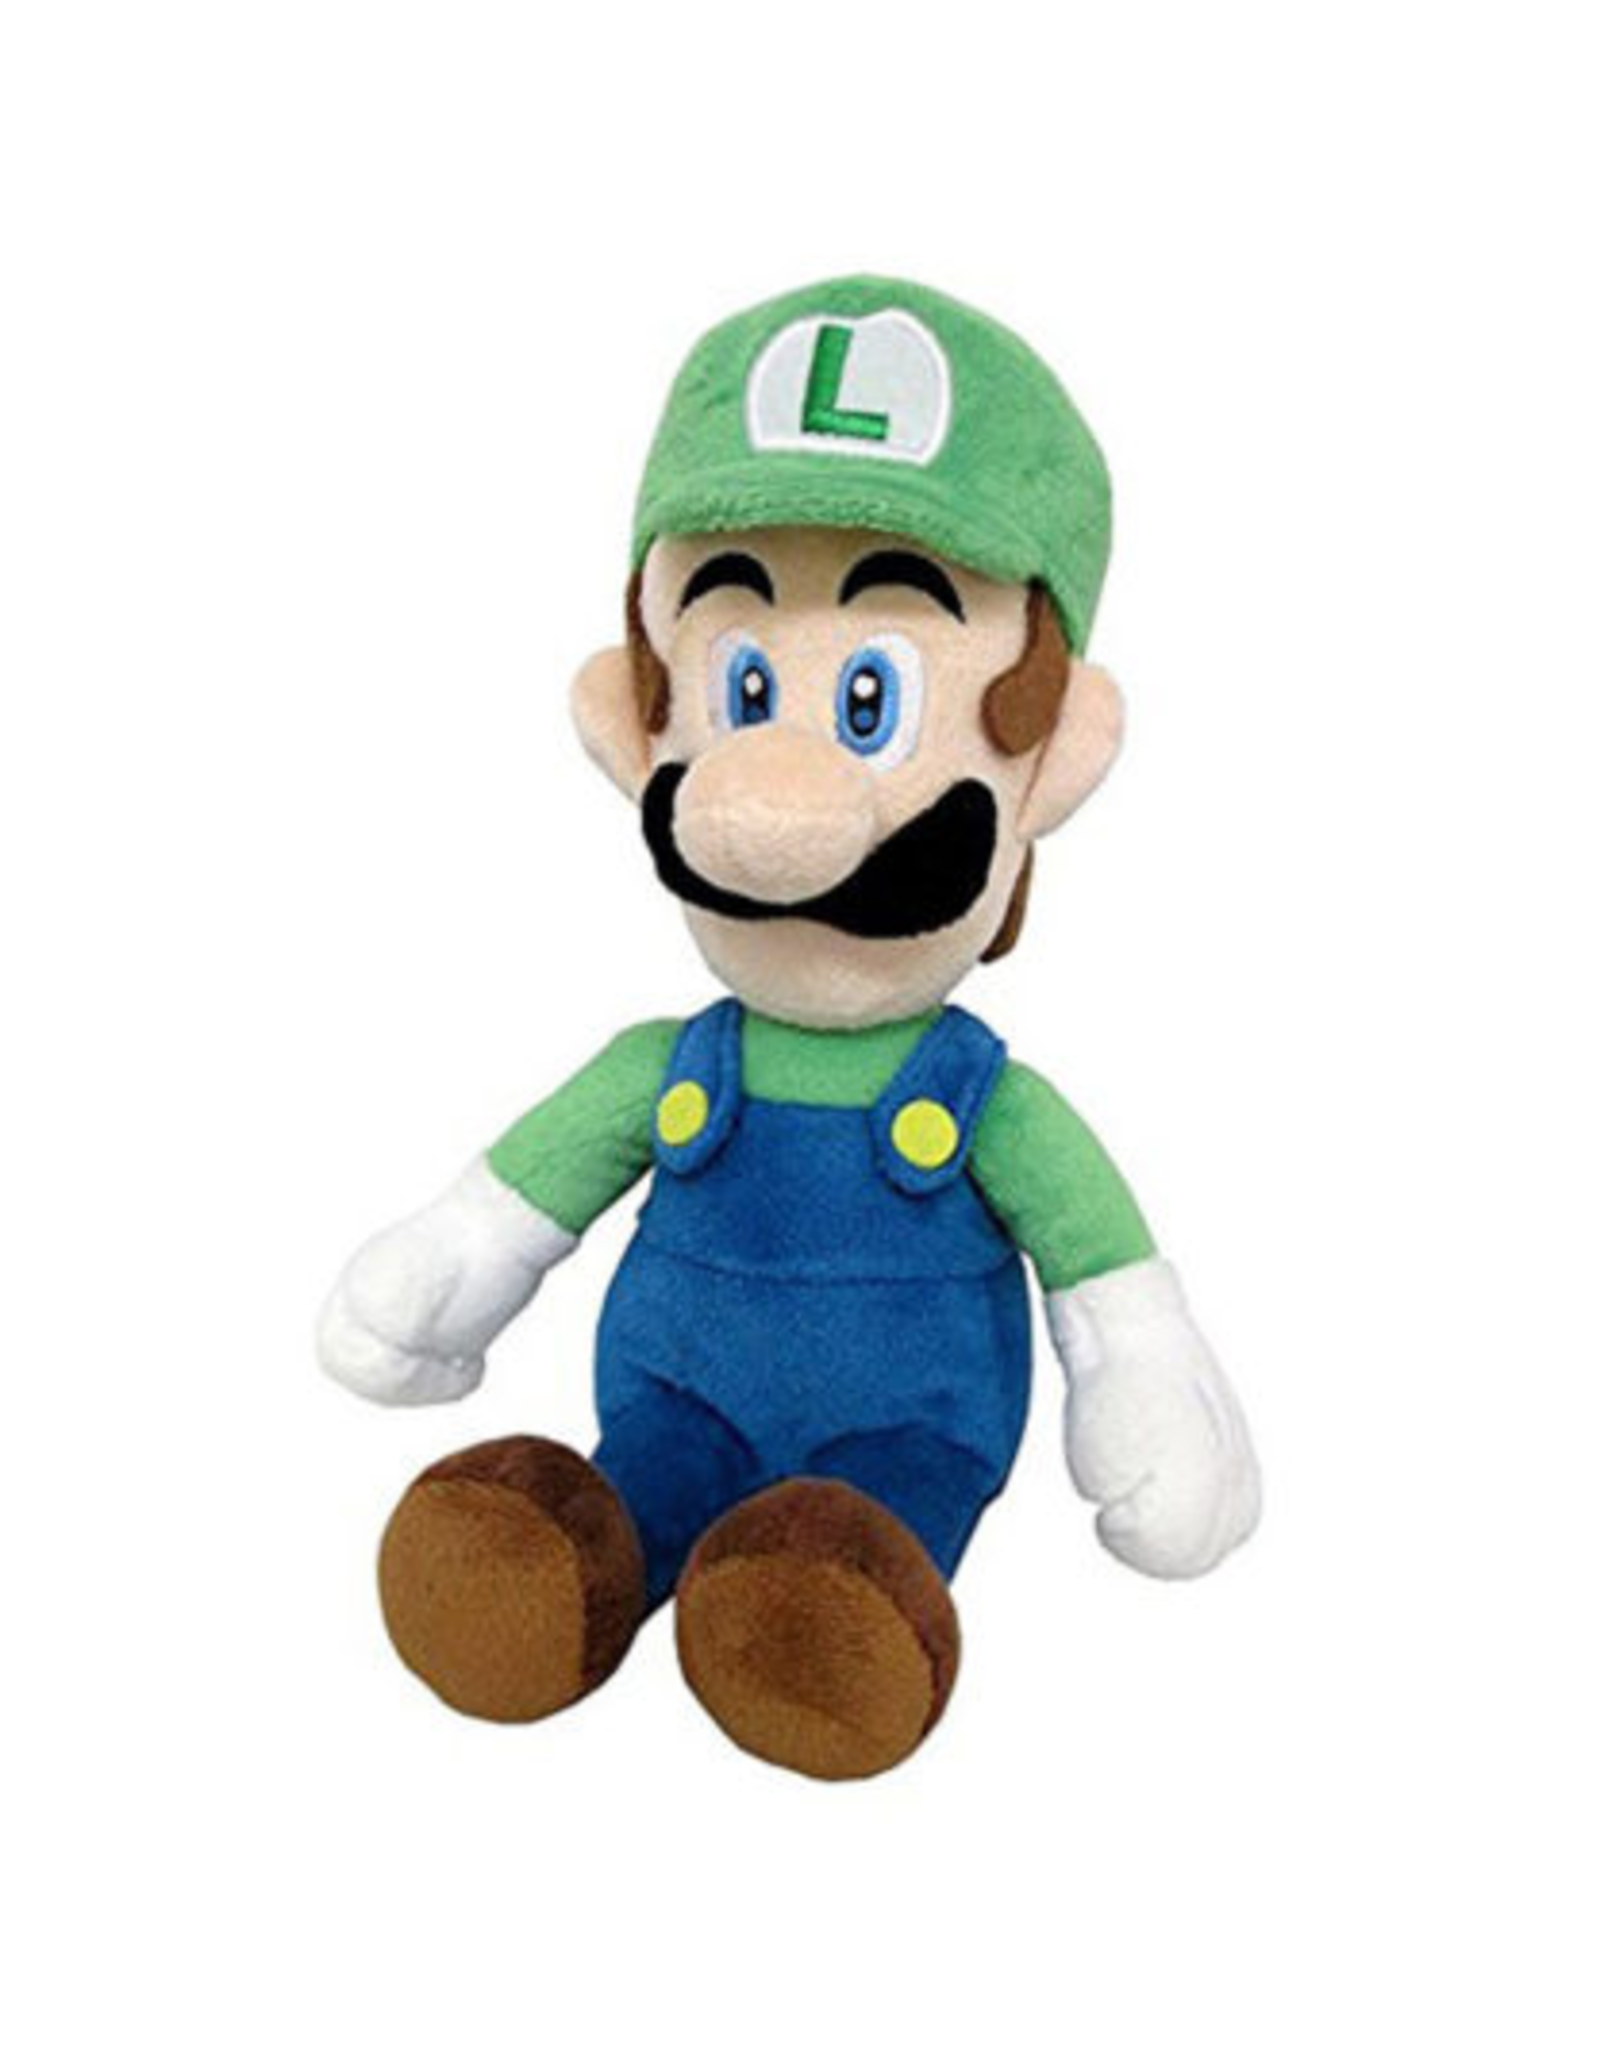 Little Buddy Super Mario Bros - Luigi - 10" Plush